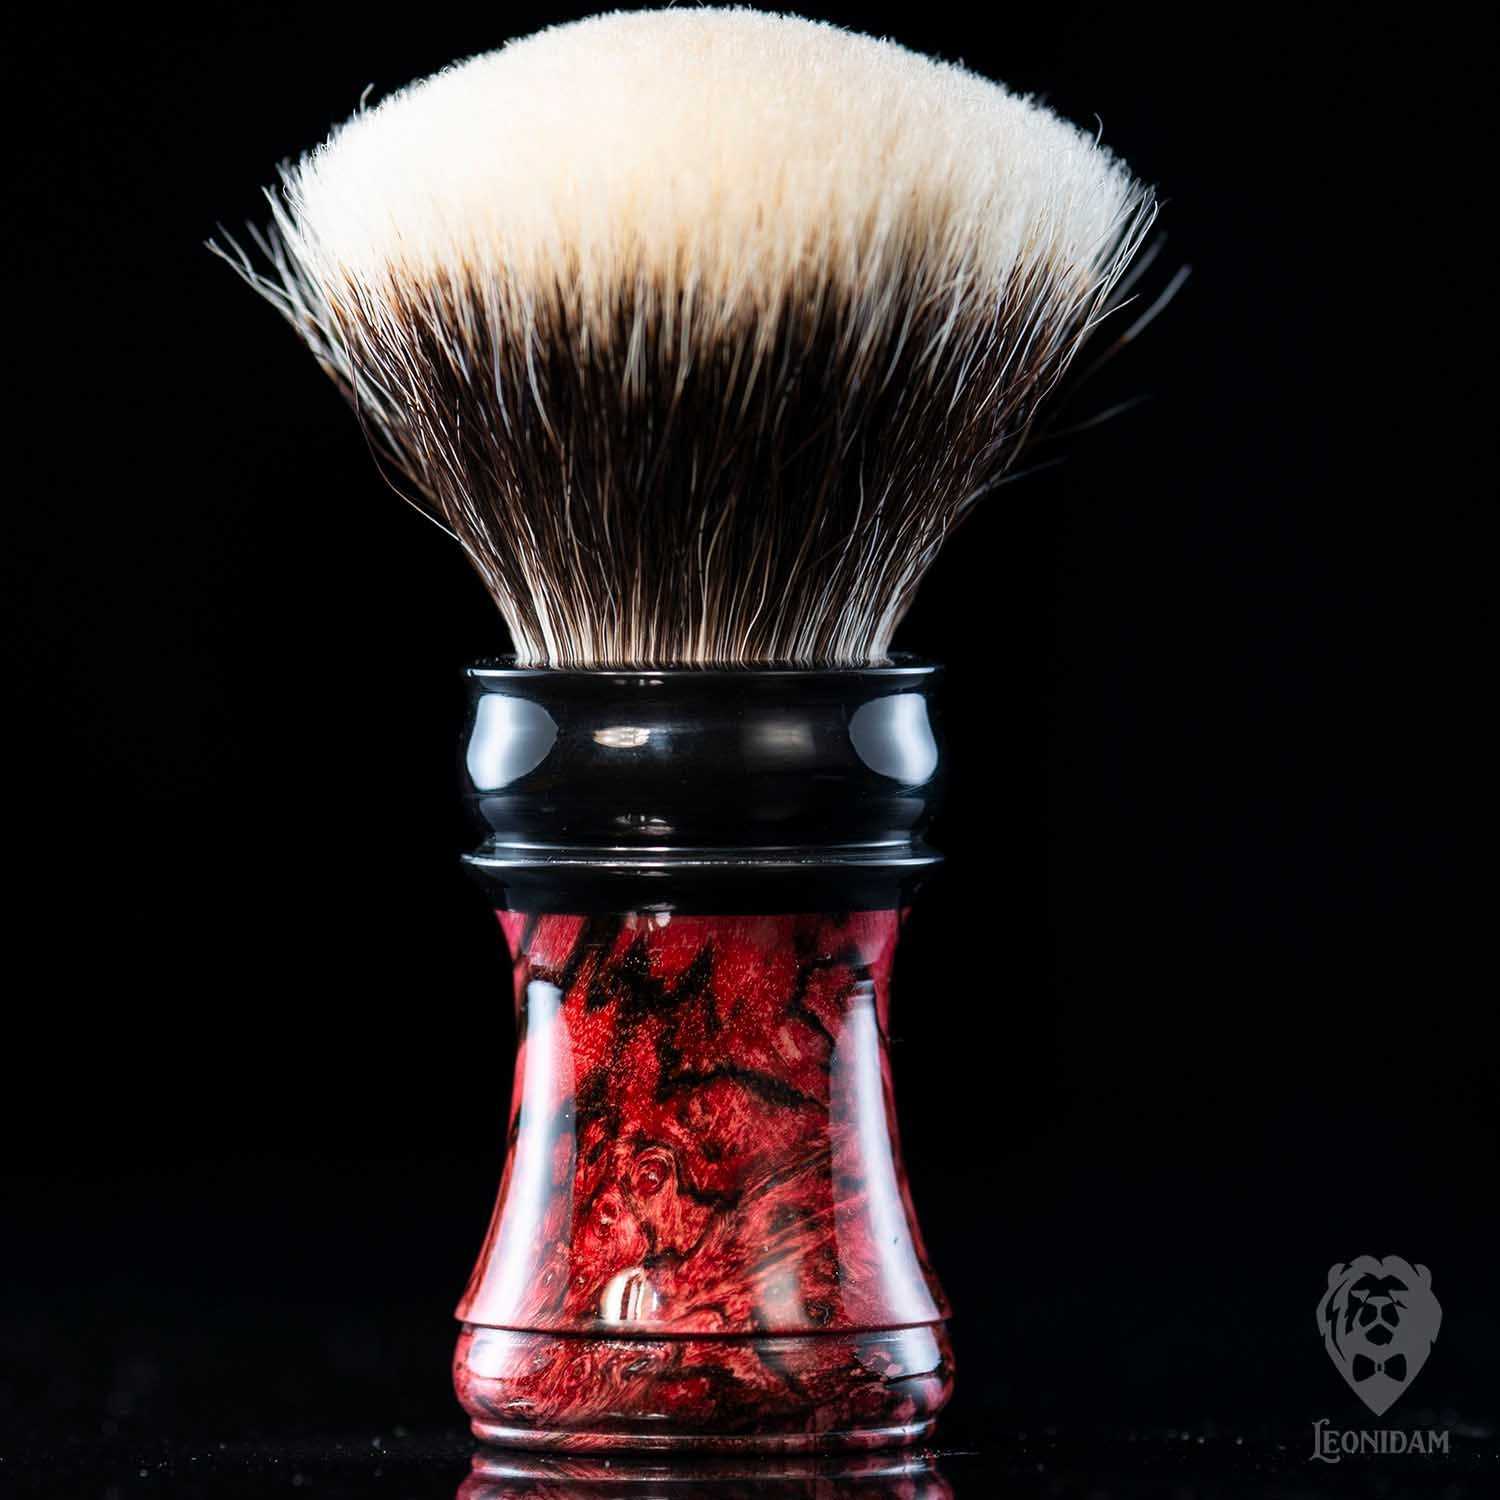 Wooden Shaving Brush "Vanitis" in reddish stabilized briar and dark resin